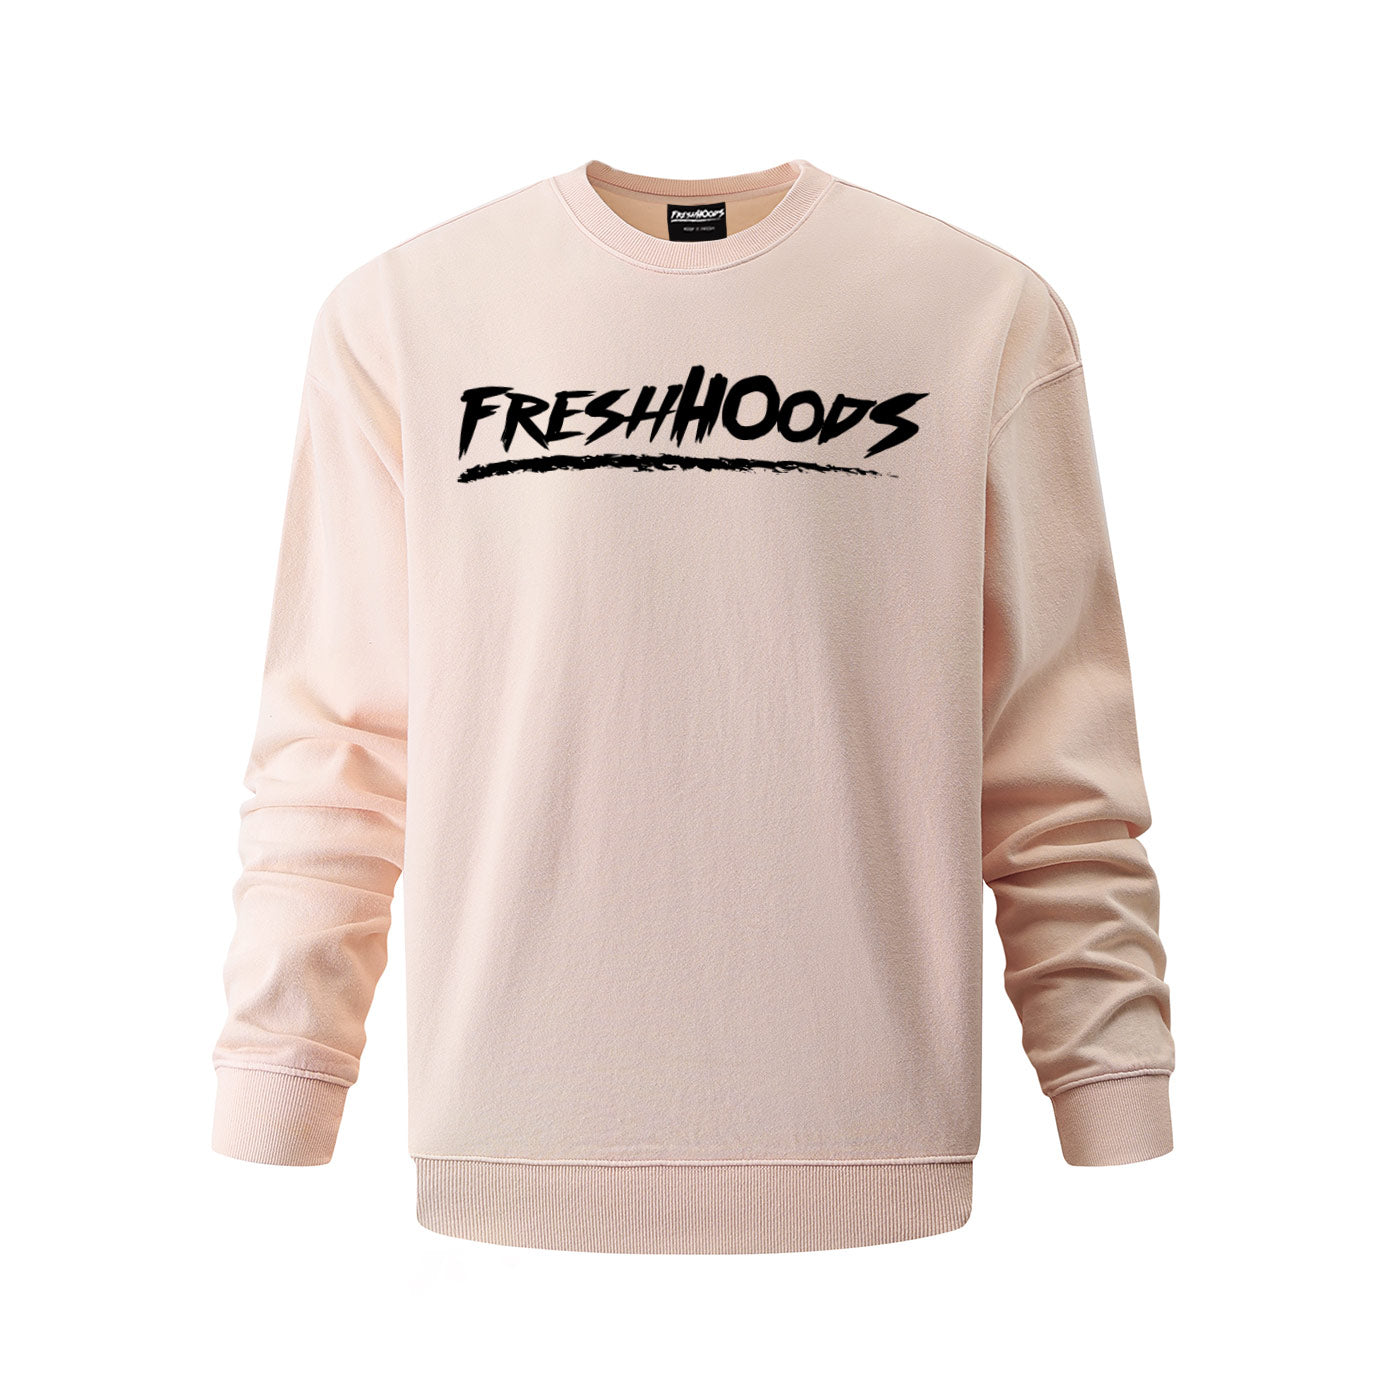 FRESHHOODS Pink Oversized Sweatshirt